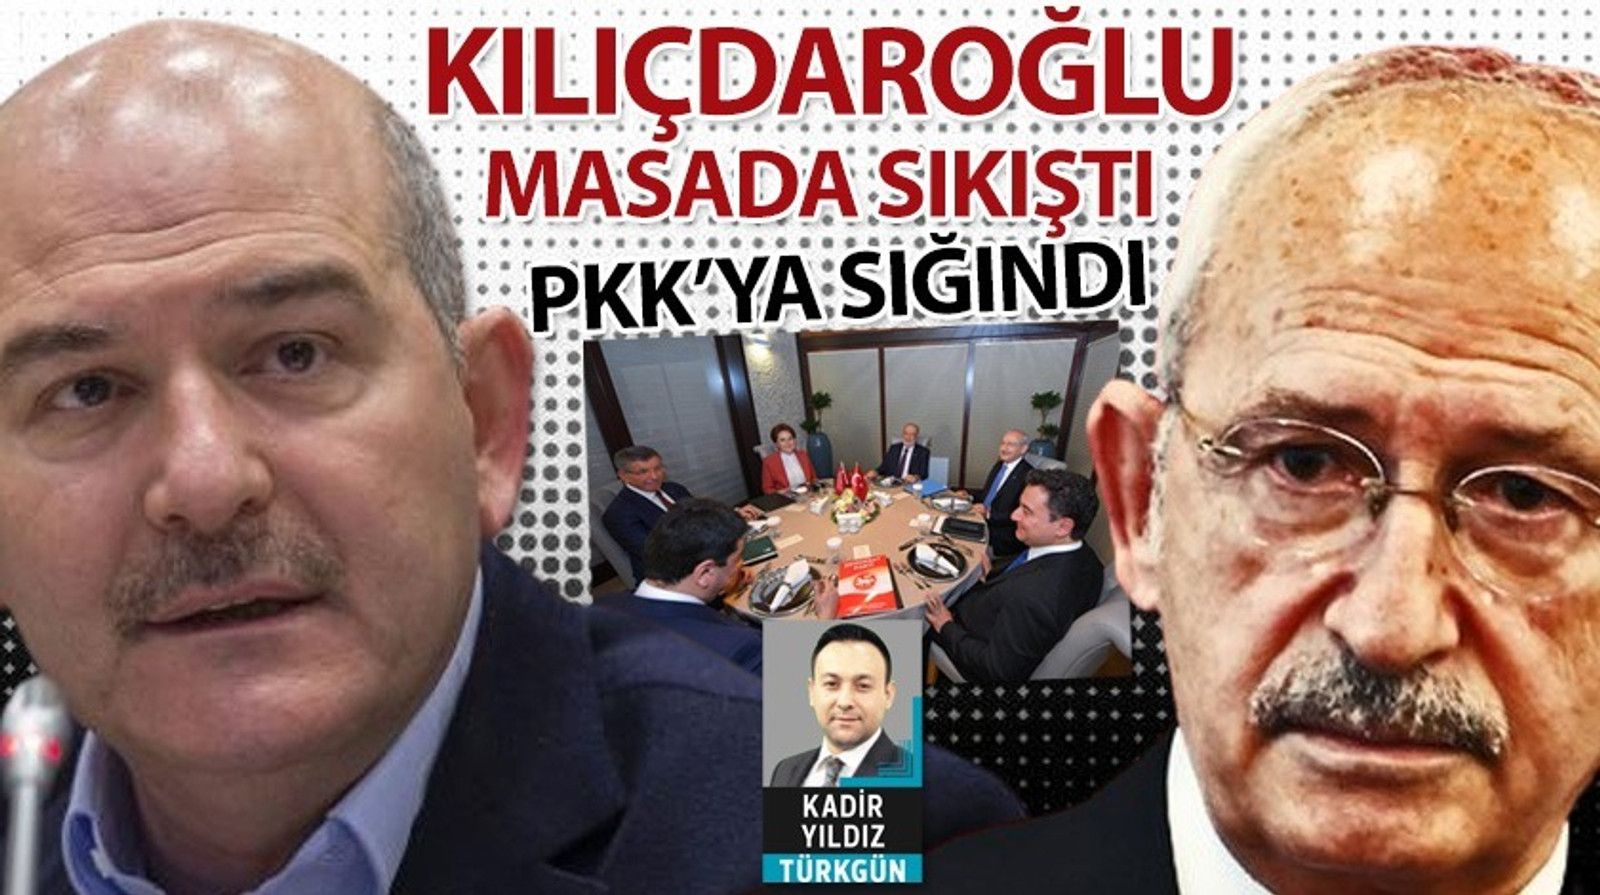 Kılıçdaroğlu masada sıkıştı, PKK'ya sığındı